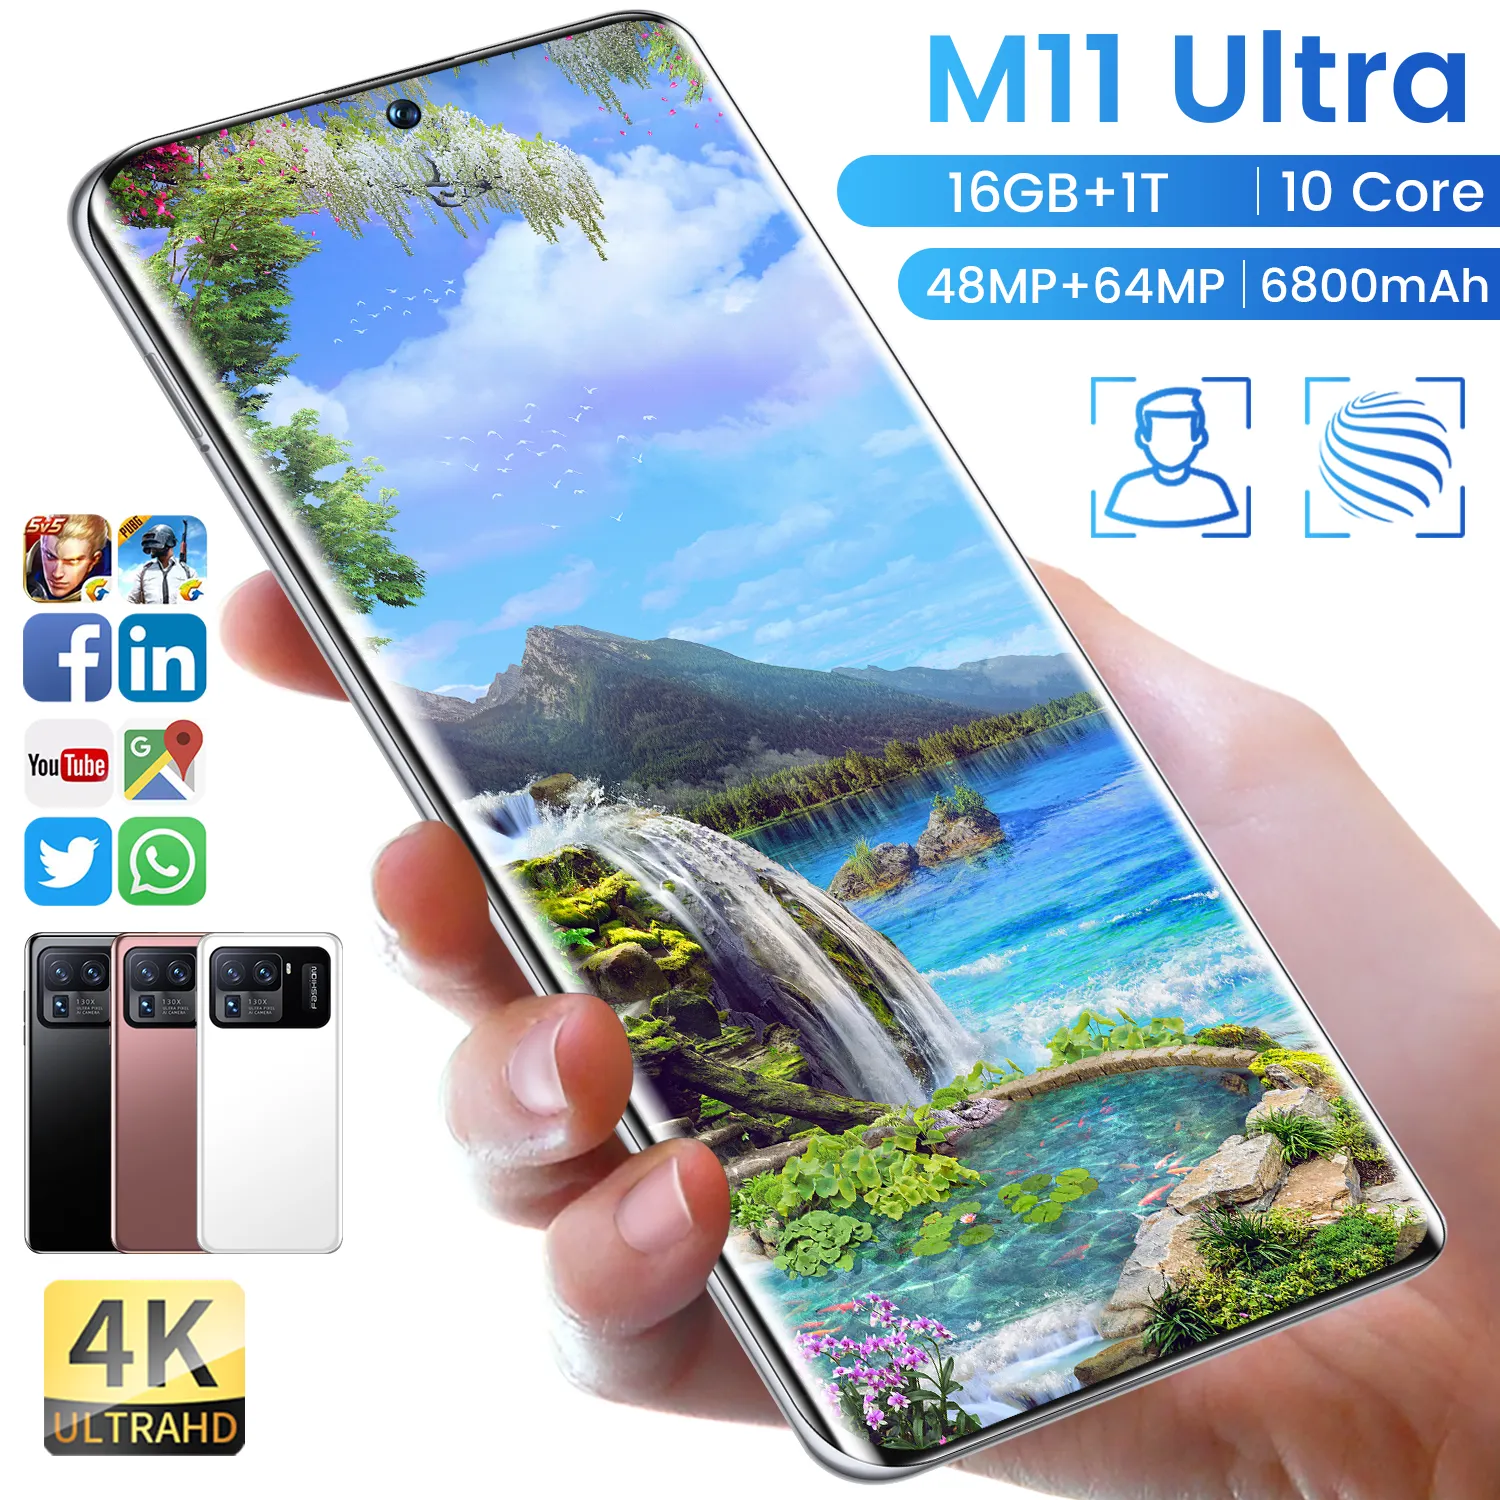 Realme Mi11 мобильного телефона большой памяти игры смартфон Jio телефон Celular 6800 мА/ч, 4G 5g 5g популярных смартфонов на базе Android